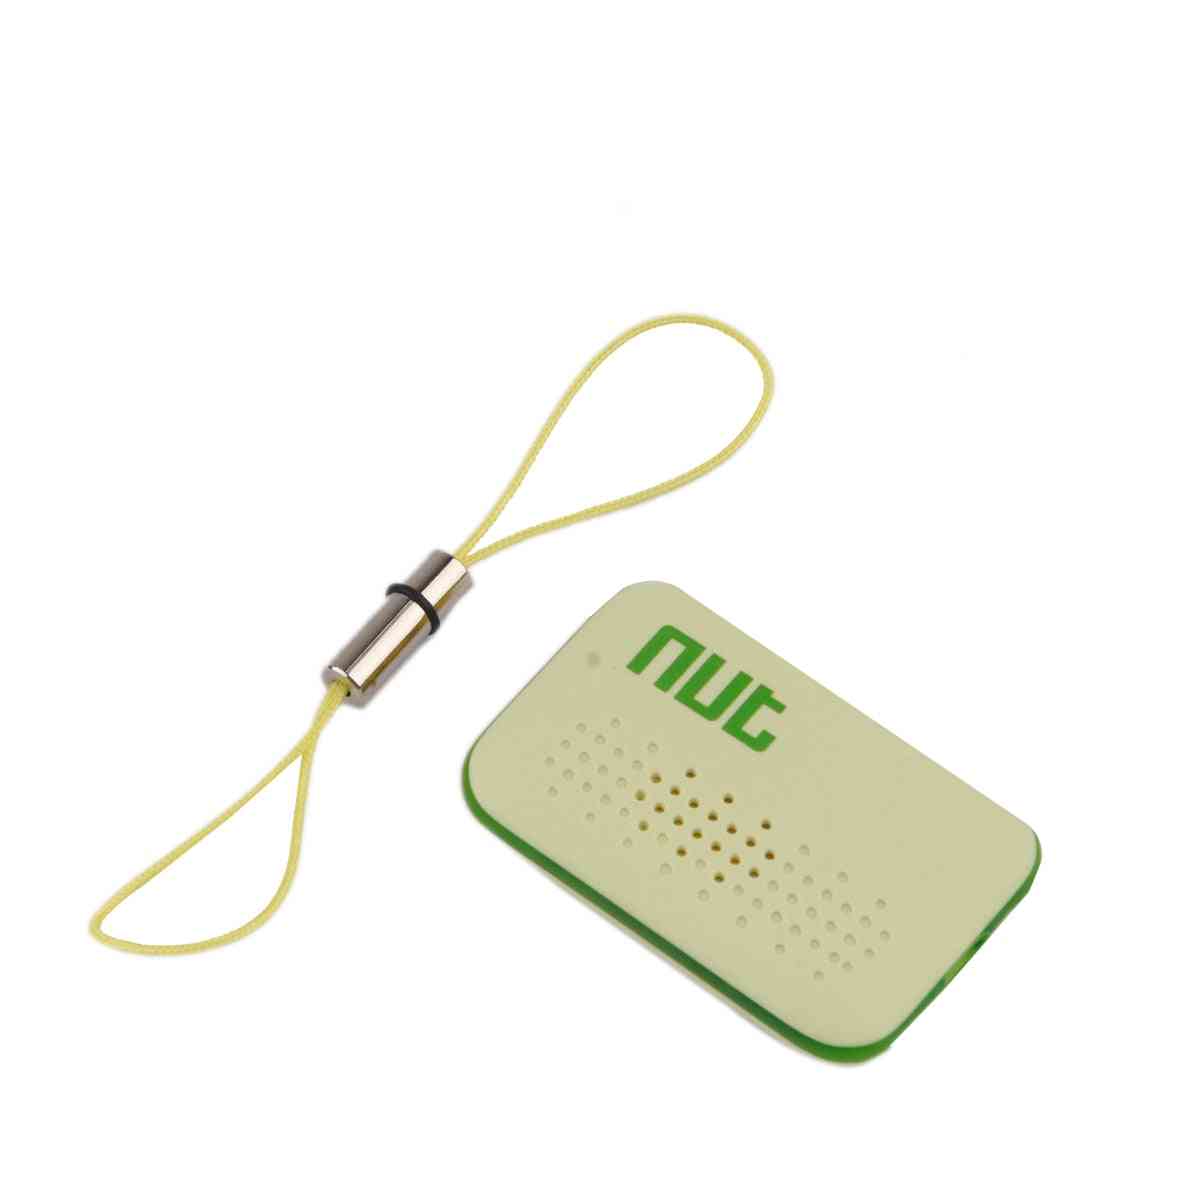 Original Mini Smart Key Finder - Wireless / Bluetooth Tag Tracker